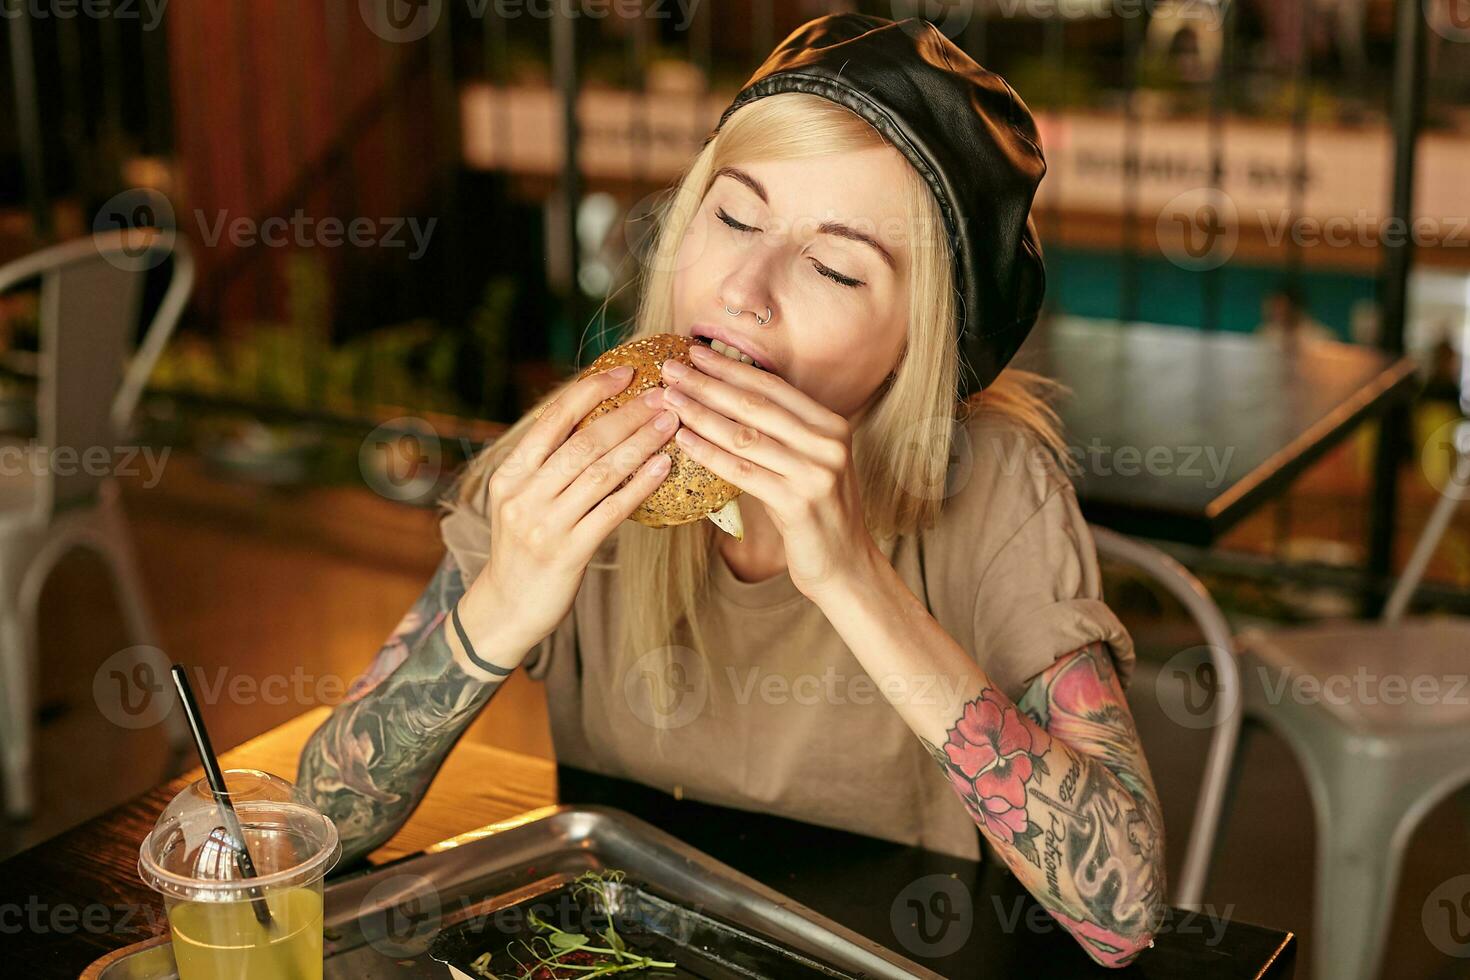 horizontal Foto von ziemlich jung blond Frau mit Tätowierungen posieren Über Stadt Cafe Innere, genießen Geschmack von Hamburger mit geschlossen Augen, tragen modisch Kleider